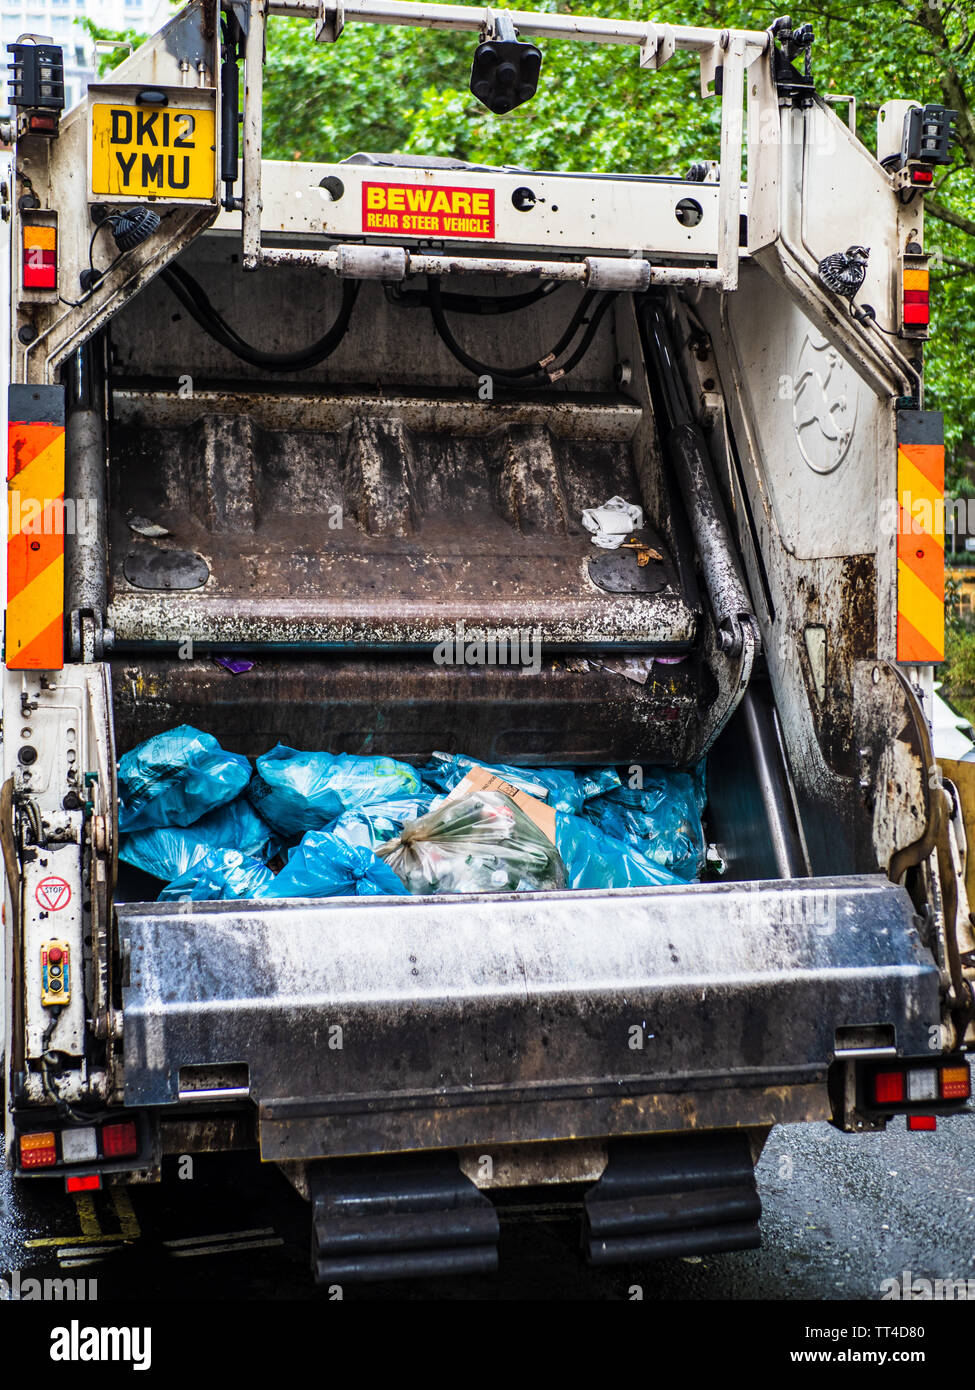 Camiones de recolección de basura o Bin Camión Londres - Londres camión de basura recogida de residuos en el centro de Londres. Rechazar el saco Colección. Bandeja de recogida de la bolsa. Foto de stock